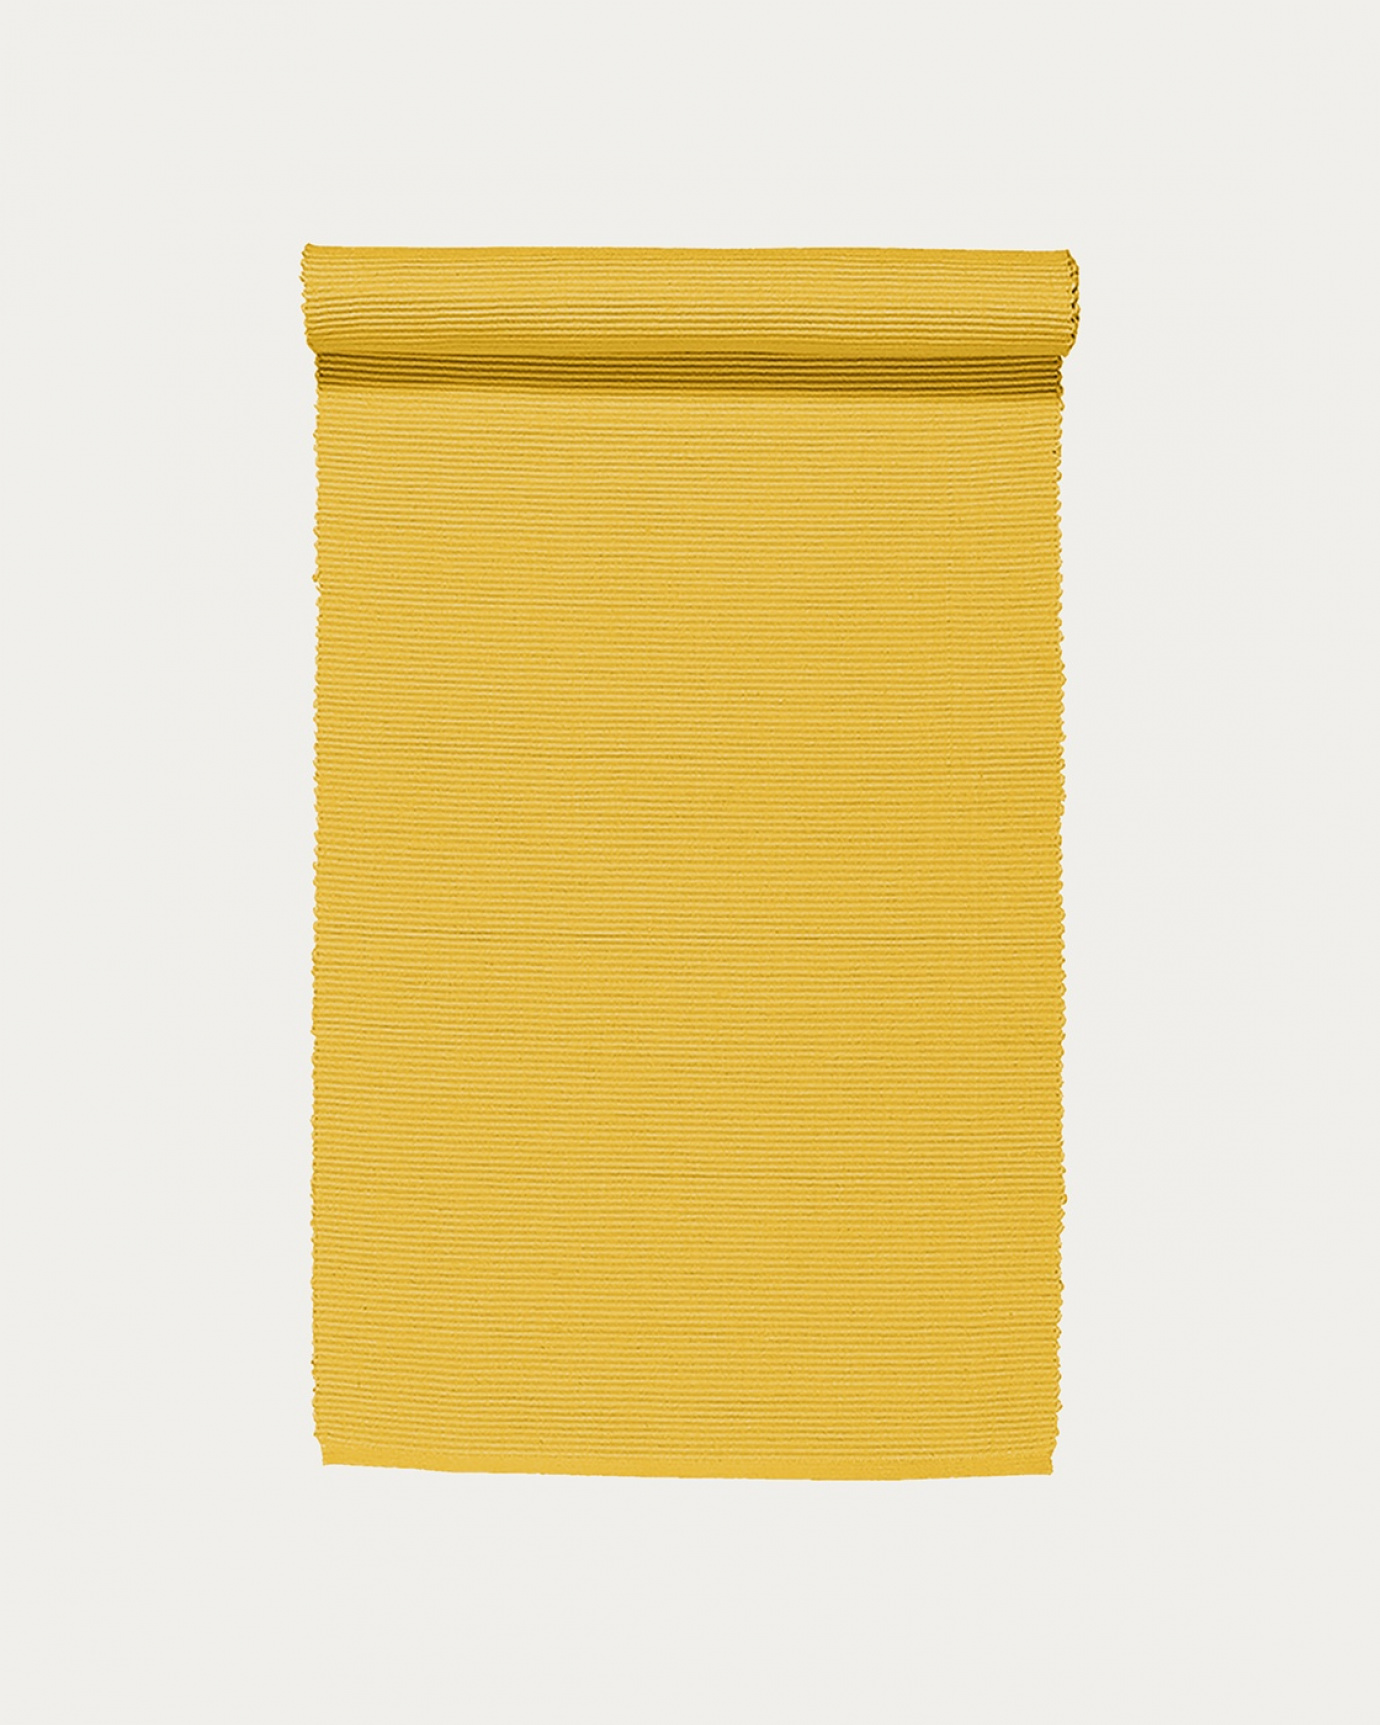 Image du produit chemin de table UNI jaune moutarde en coton doux de qualité côtelée de LINUM DESIGN. Taille 45 x 150 cm.